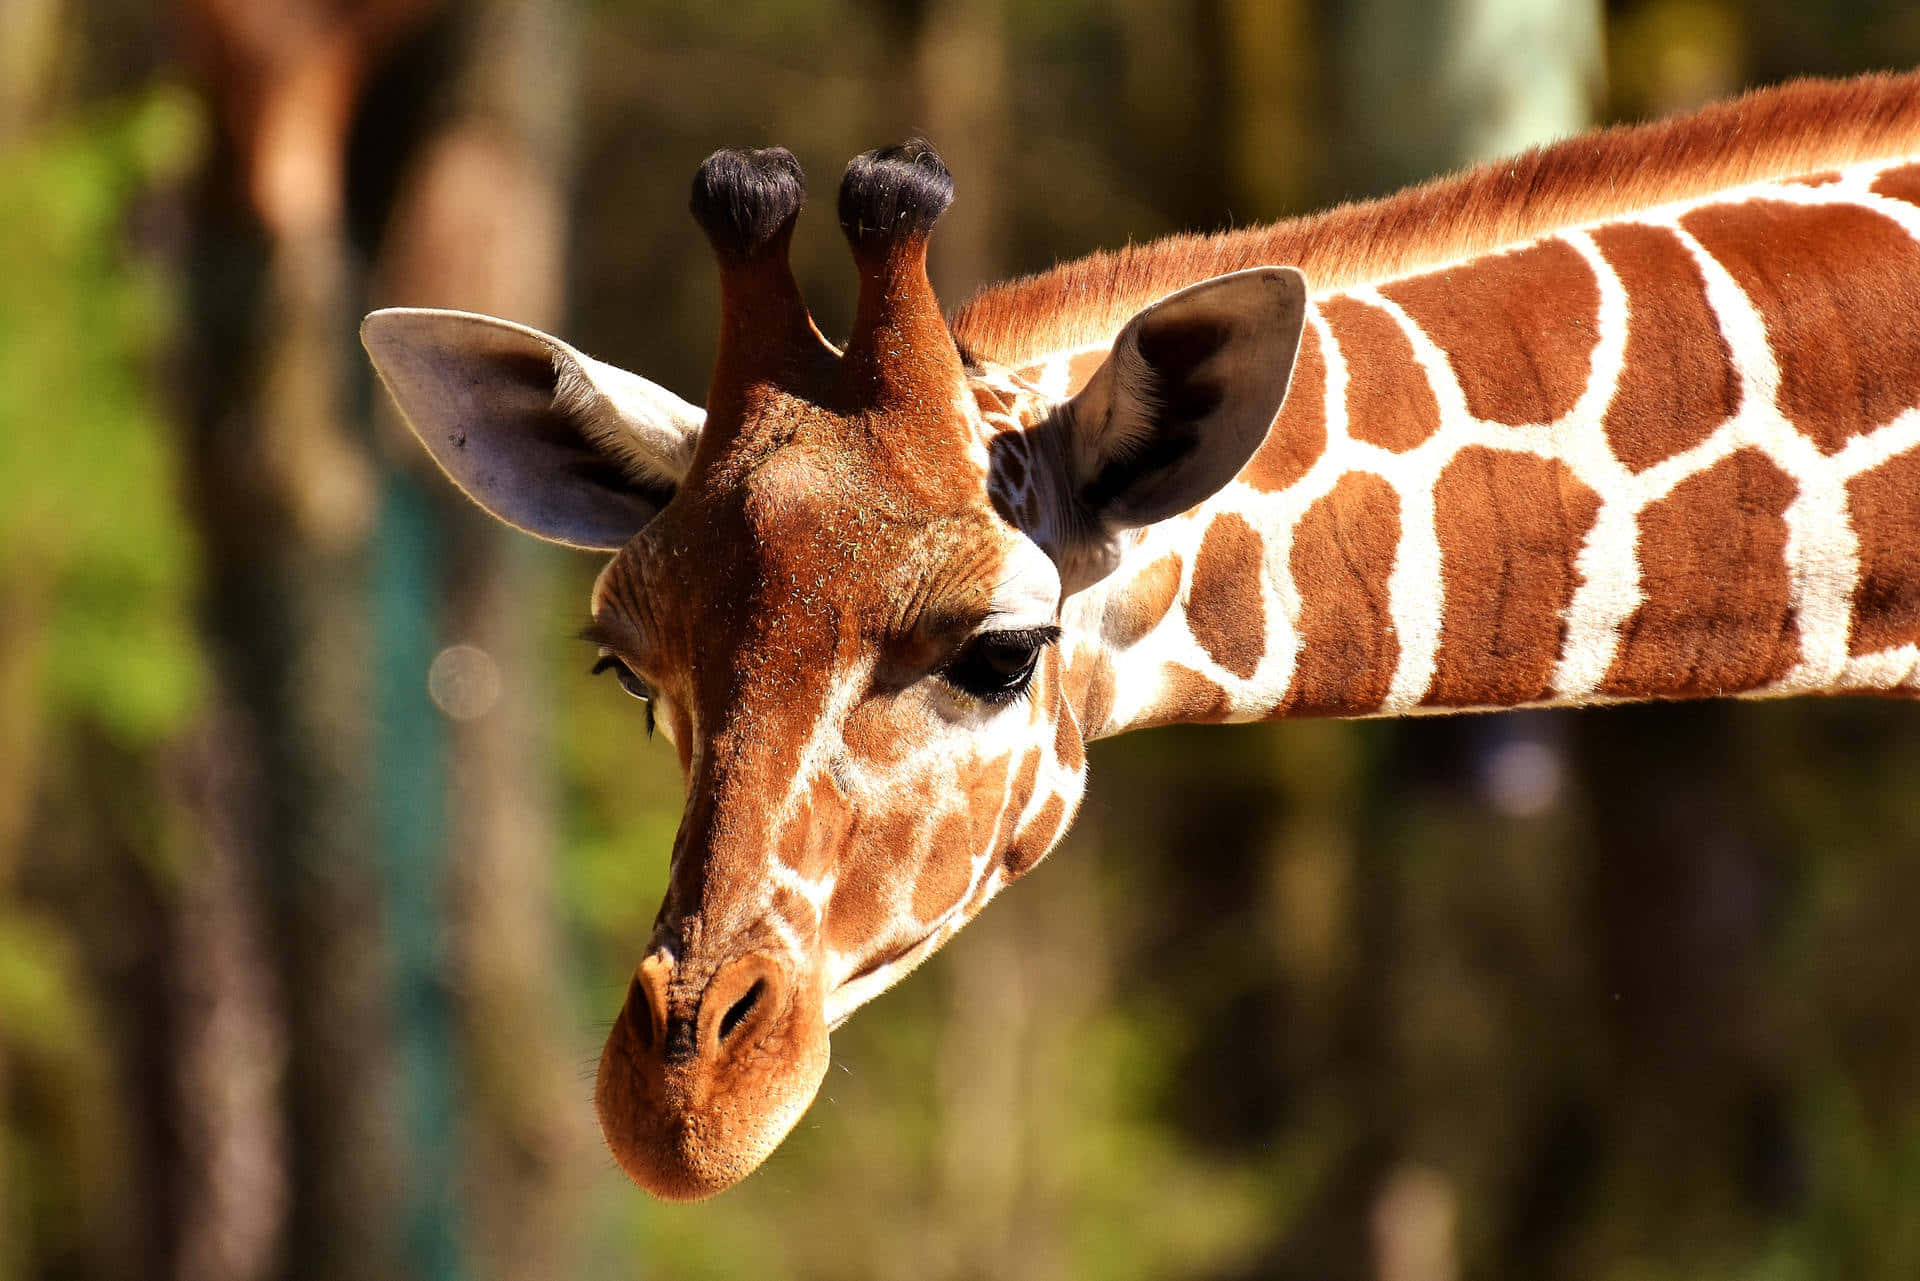 Ensmuk Giraf I Dens Naturlige Habitat.